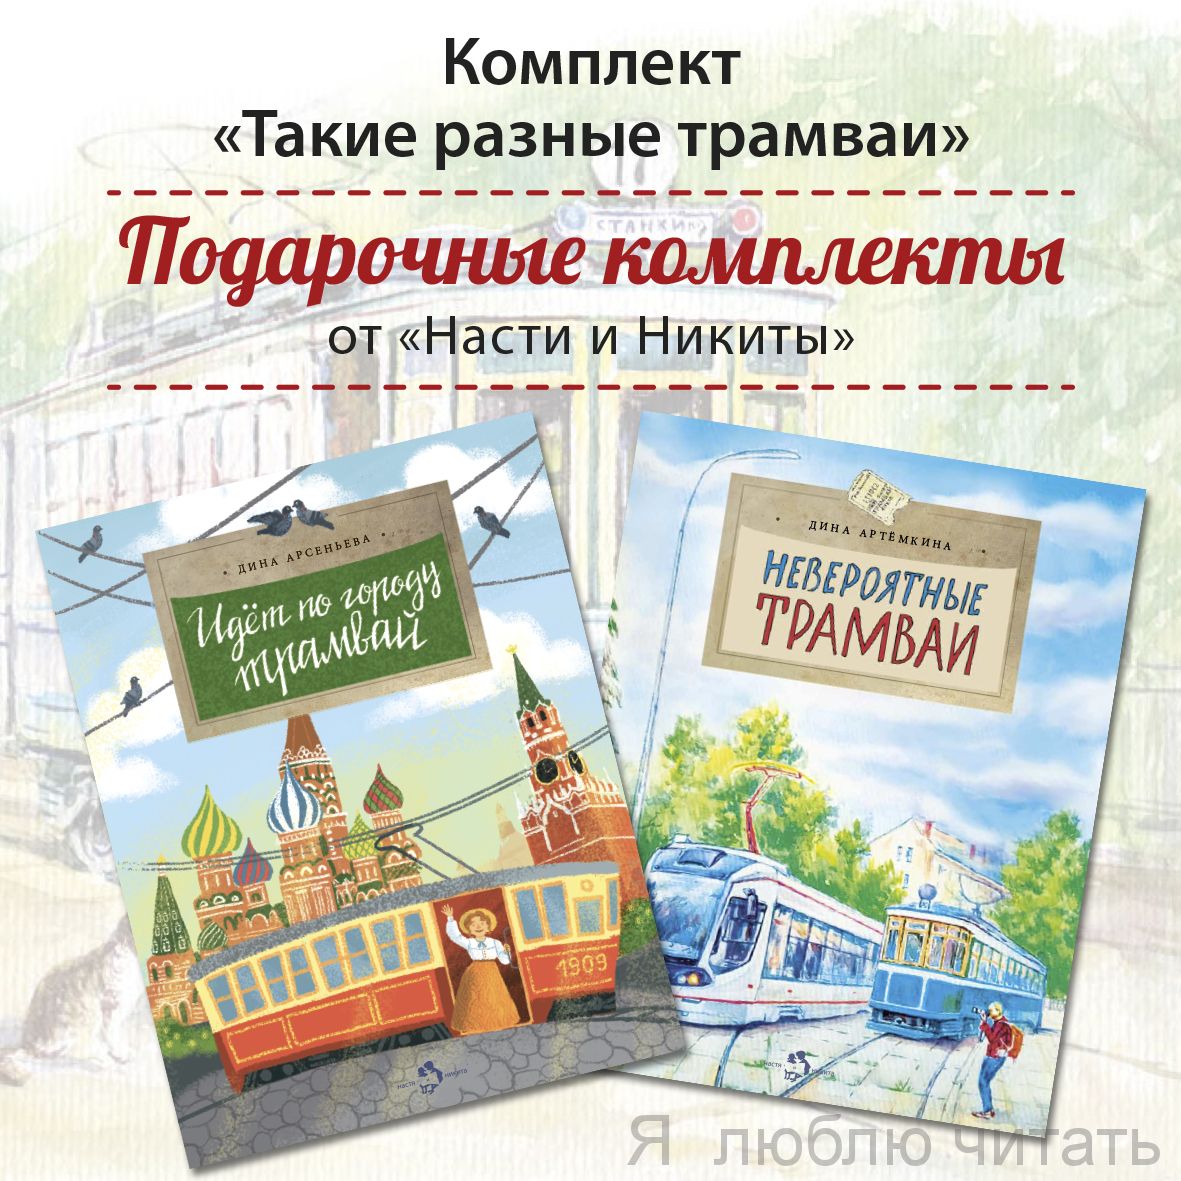 Книжный комплект «Такие разные трамваи»